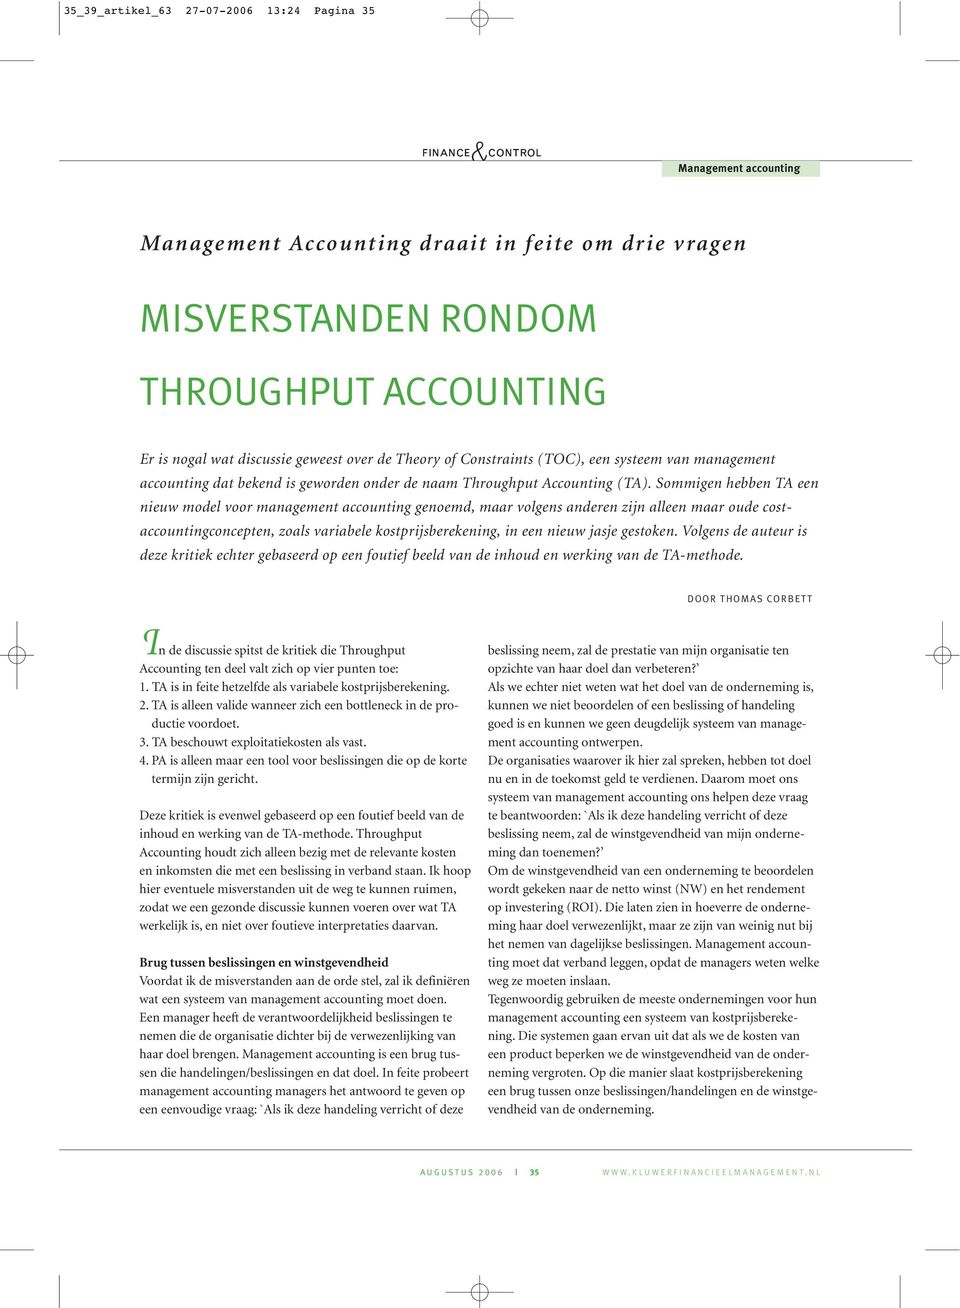 Sommigen hebben TA een nieuw model voor management accounting genoemd, maar volgens anderen zijn alleen maar oude costaccountingconcepten, zoals variabele kostprijsberekening, in een nieuw jasje